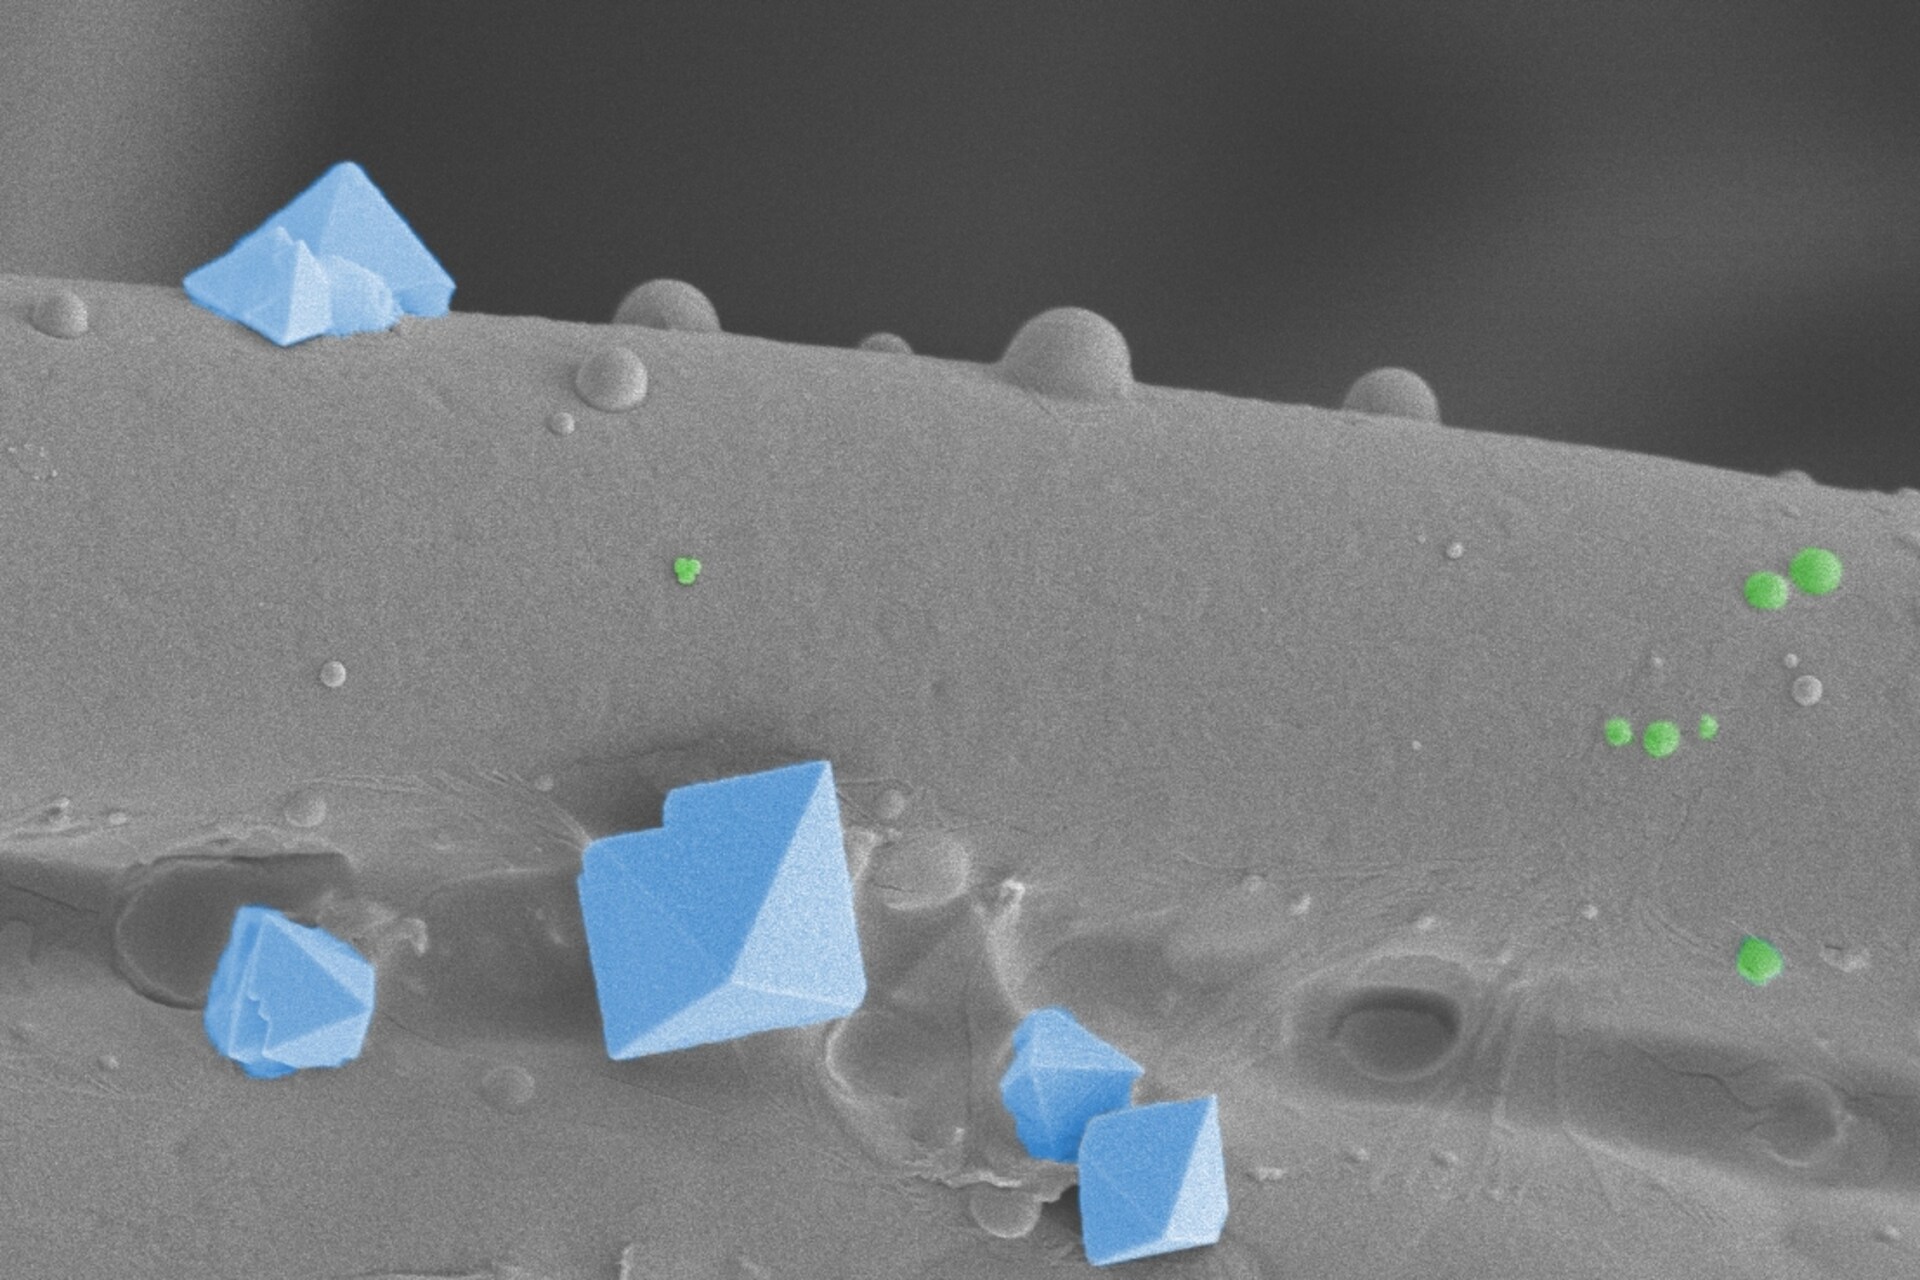 Smrt viru: Jen několika virům se podaří dostat do nejvnitřnější vrstvy látkové masky: Obrázek (skenovací elektronová mikroskopie, post-color) ukazuje textilní vlákno s krystaly soli (modré) a viry o velikosti asi 100 nanometrů (zelené)